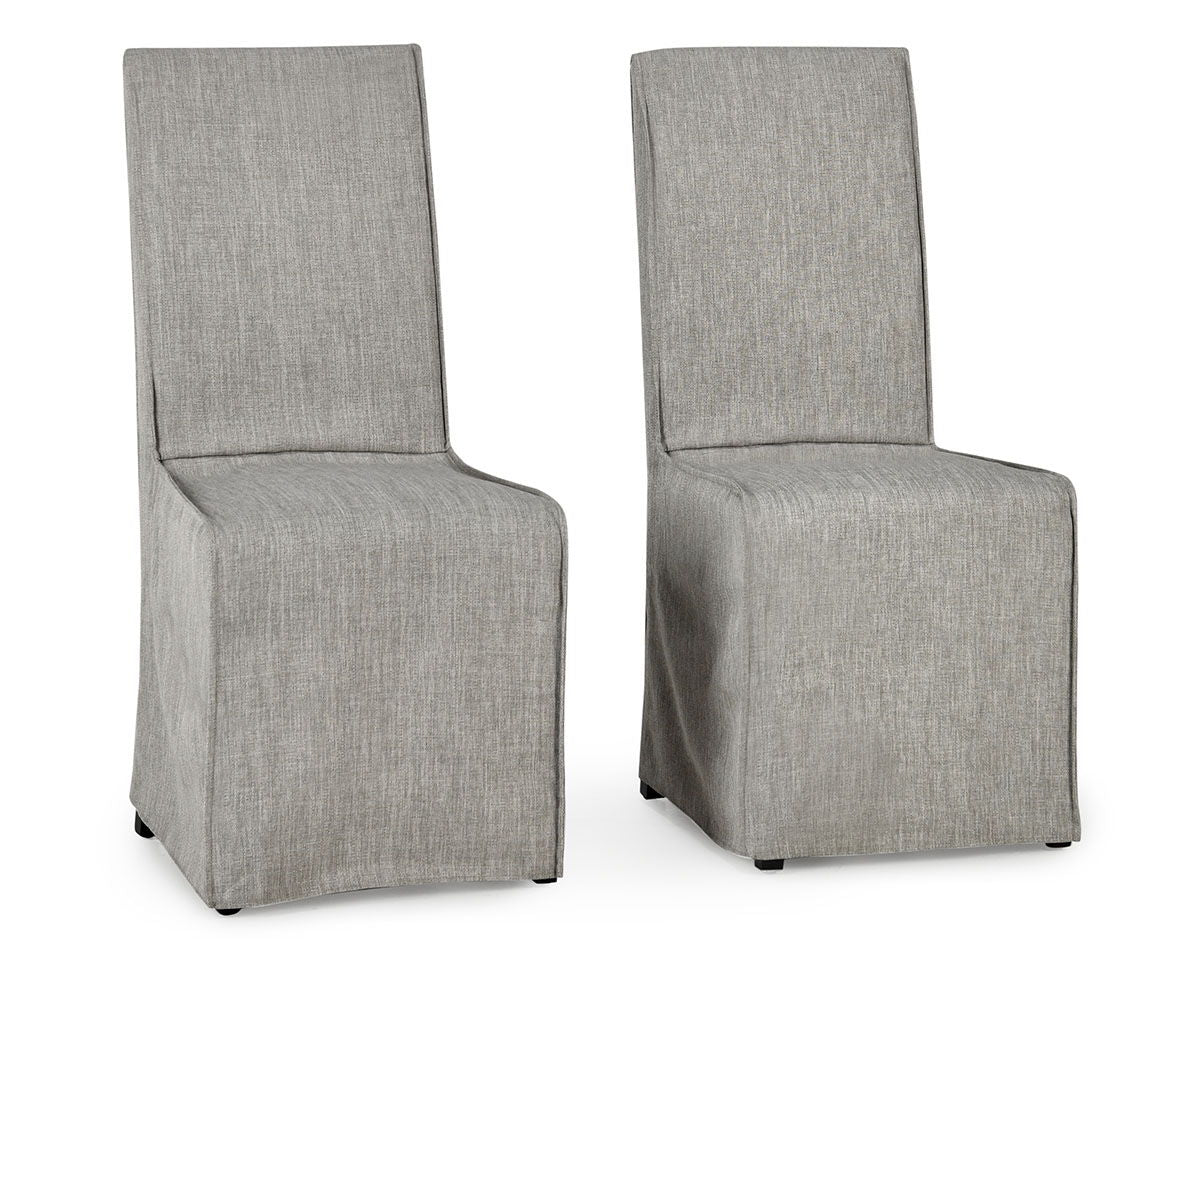 Jordan - Upholstered Dining Chair (Set of 2)